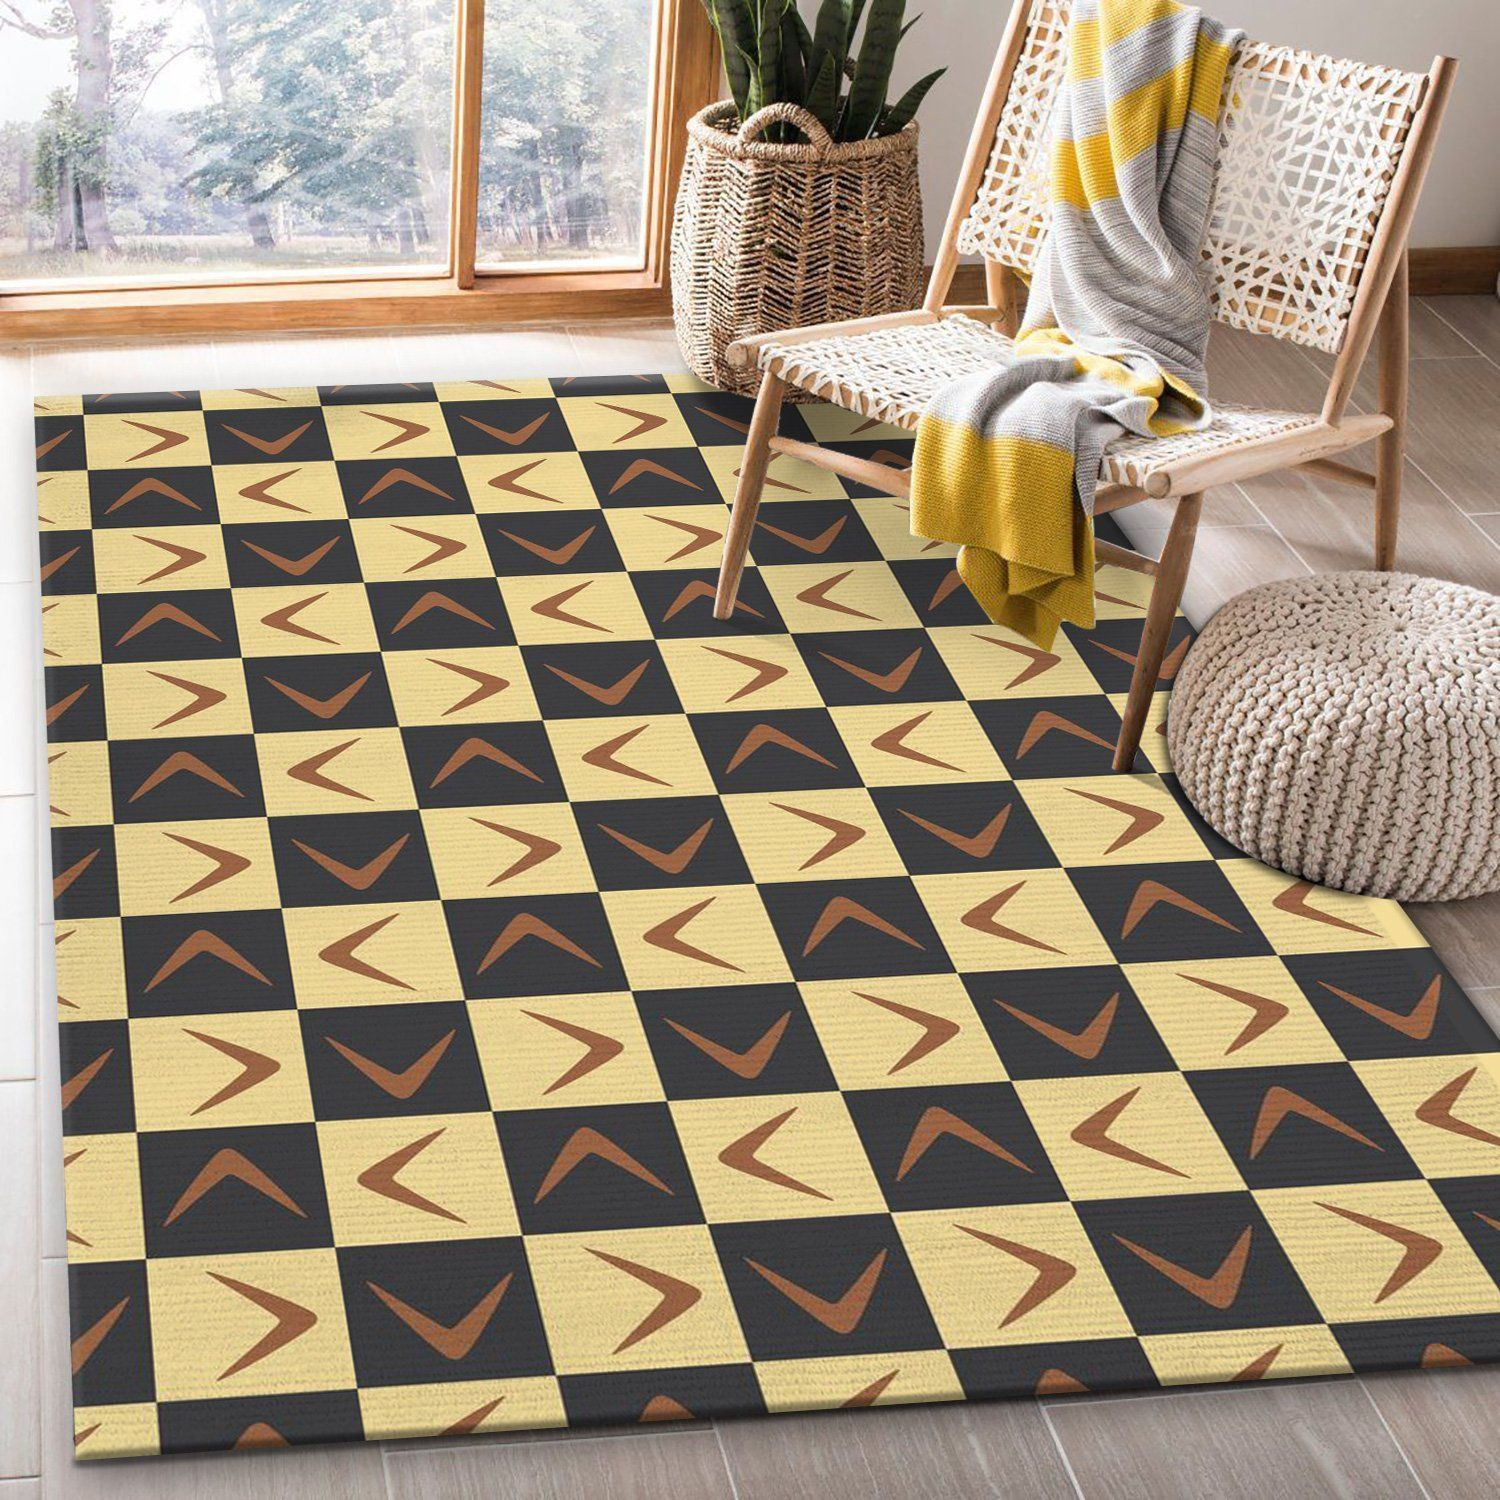 Midcentury Pattern 42 Area Rug Carpet, Kitchen Rug, Home Decor Floor Decor - Indoor Outdoor Rugs